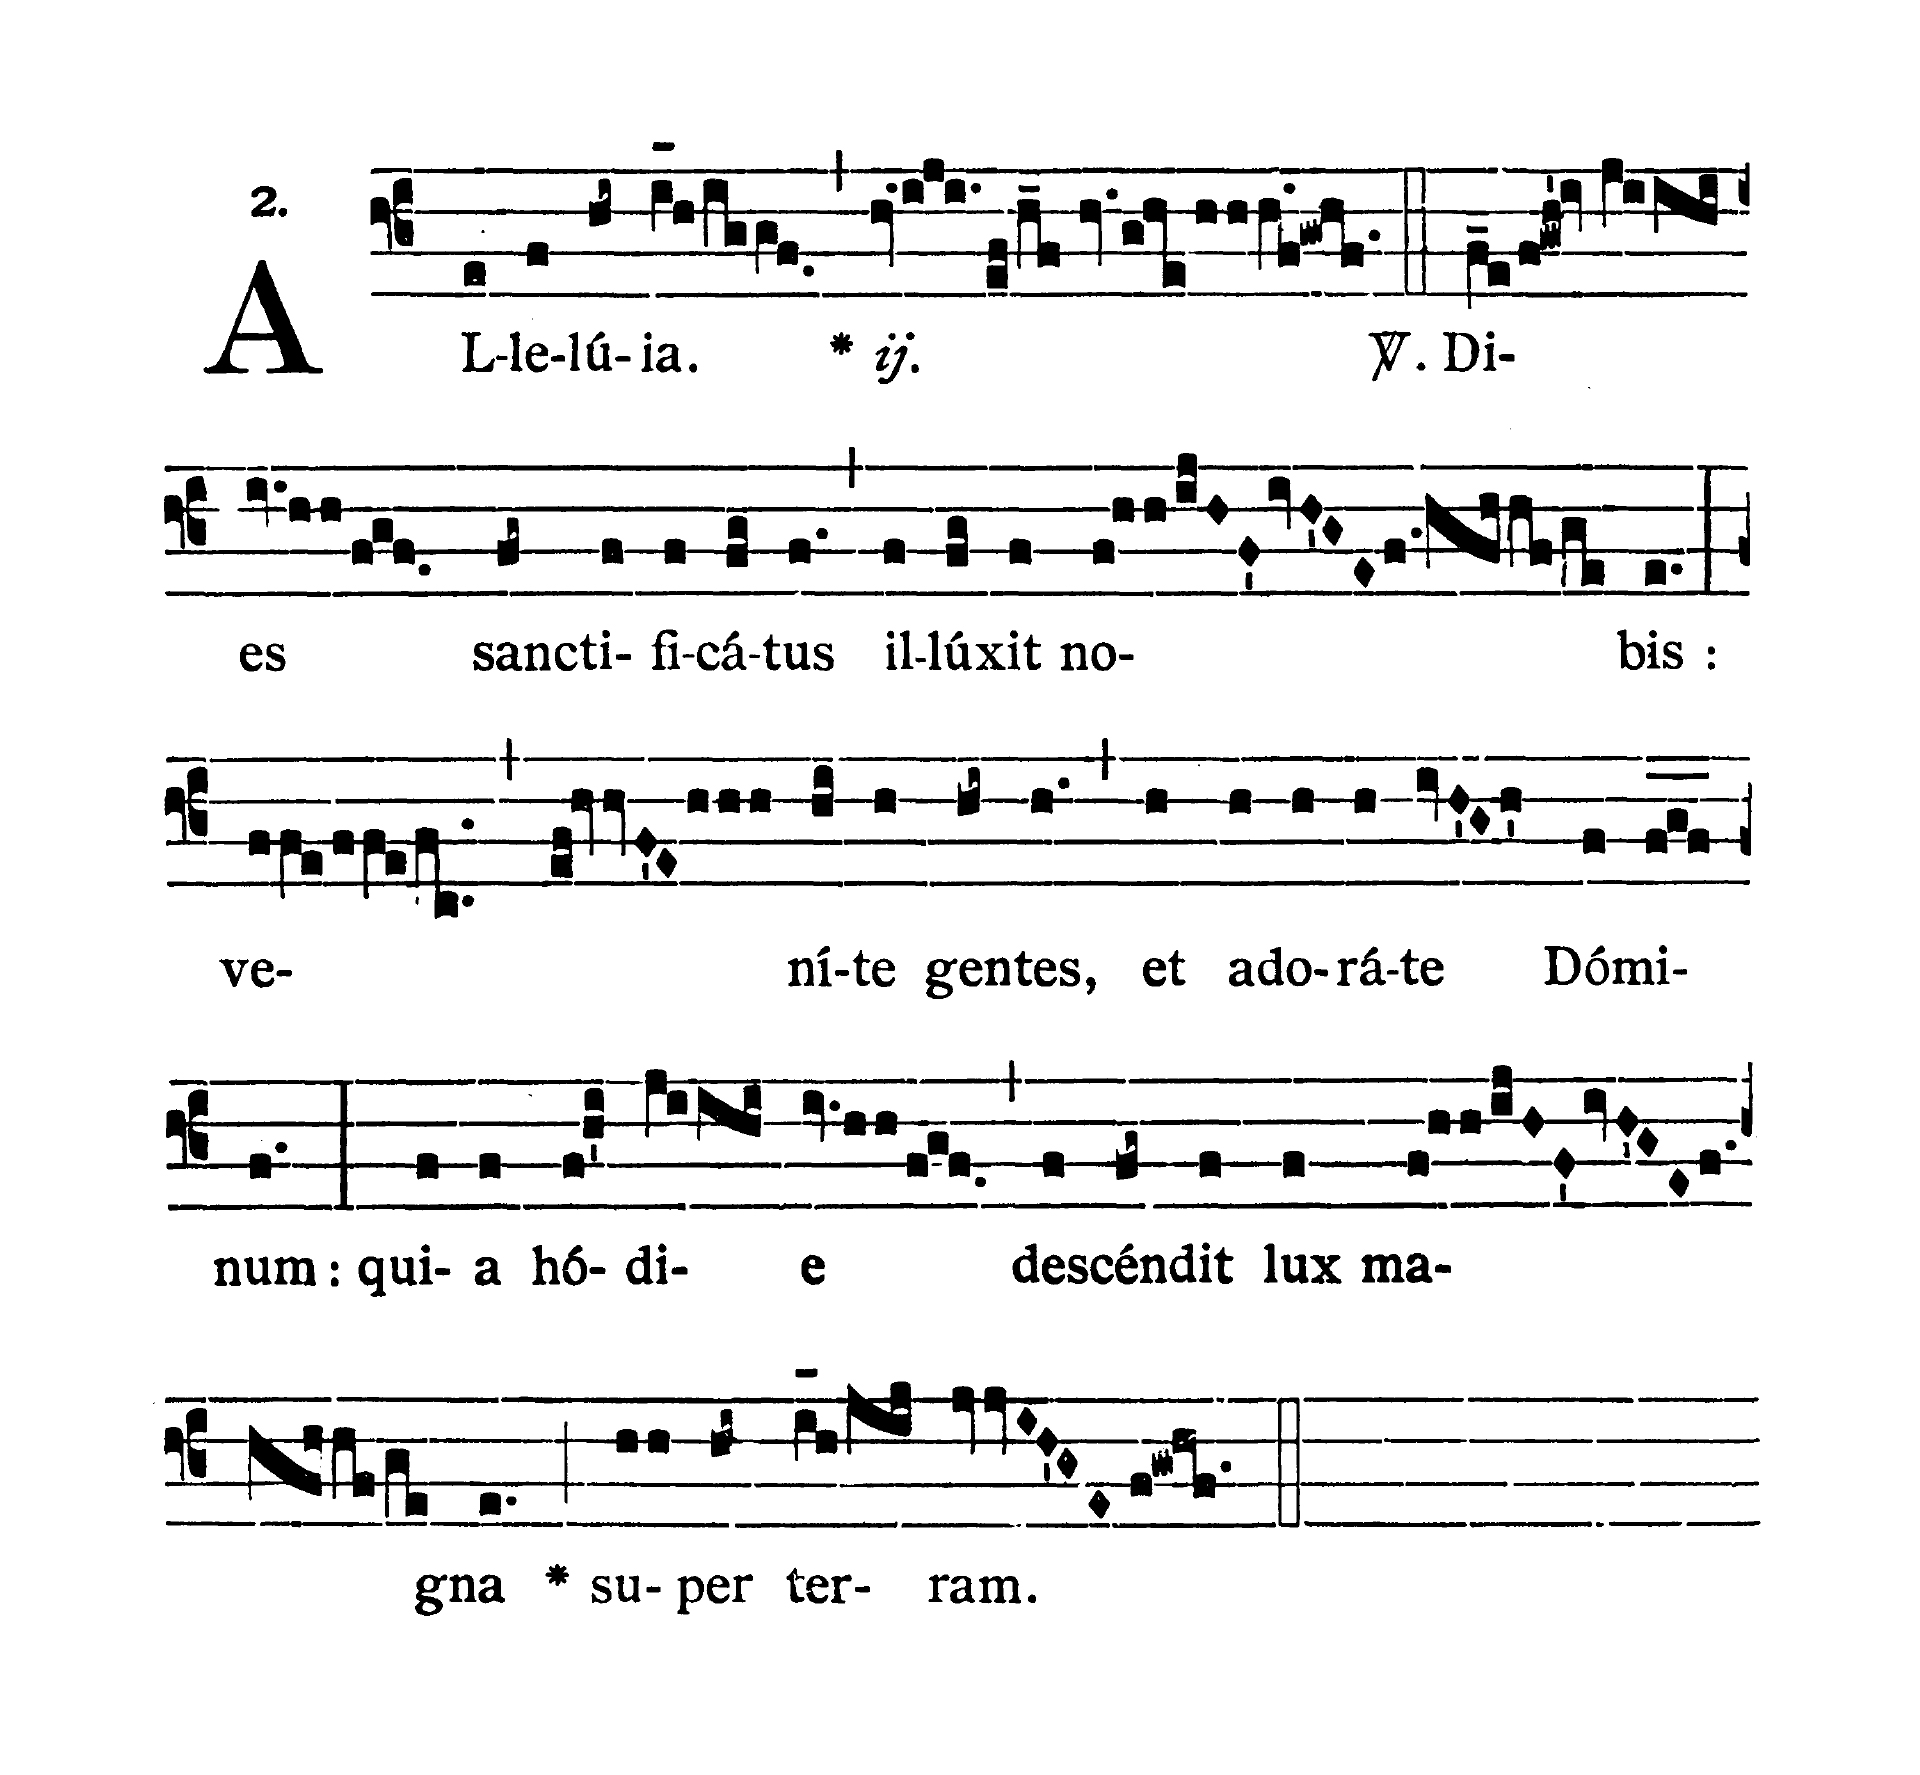 De Octava Nativitatis Domini - Alleluia (Dies sanctificatus)